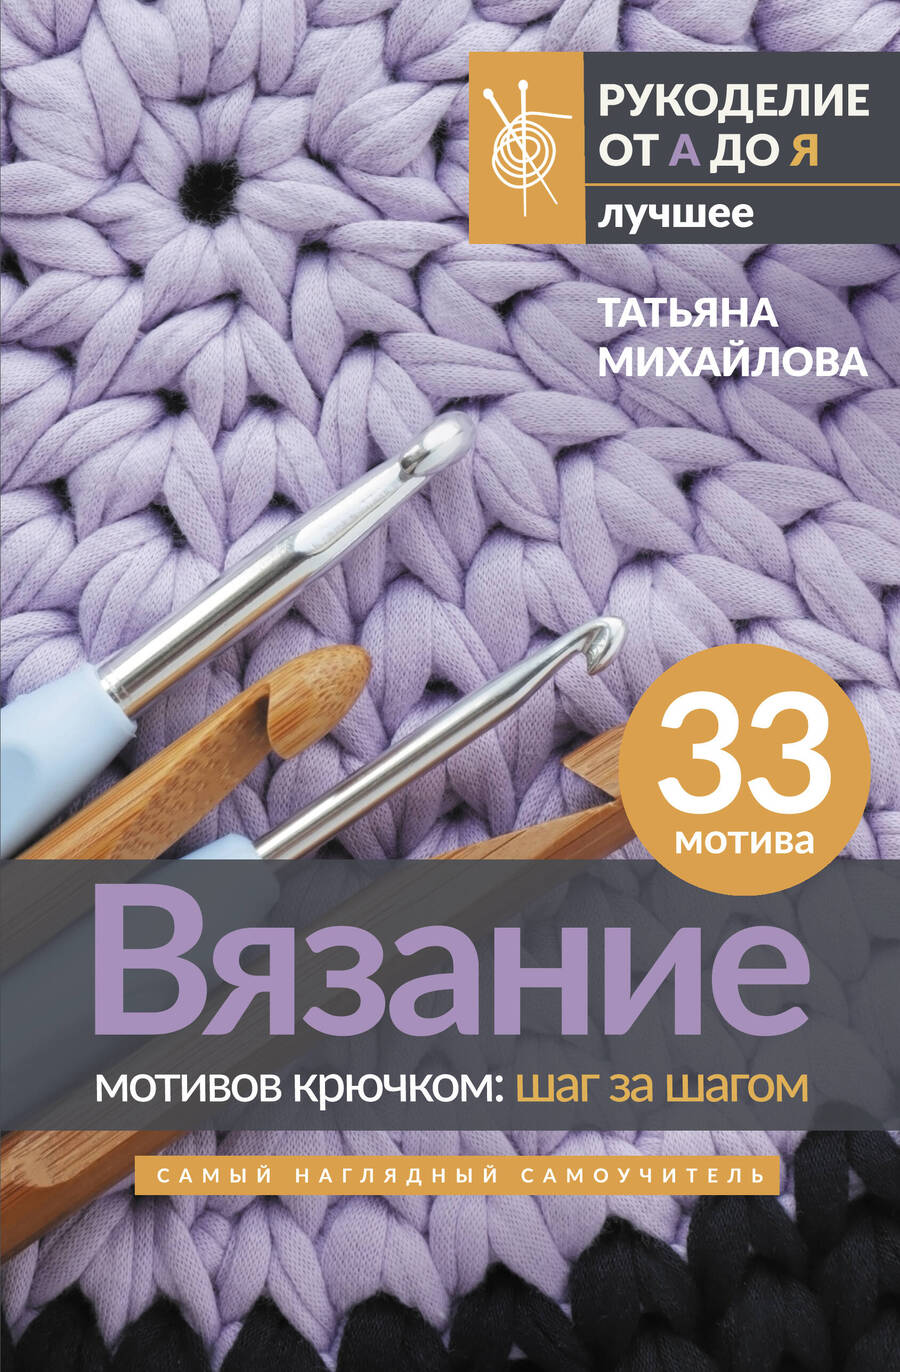 Обложка книги "Михайлова: Вязание мотивов крючком. Шаг за шагом. Самый наглядный самоучитель"